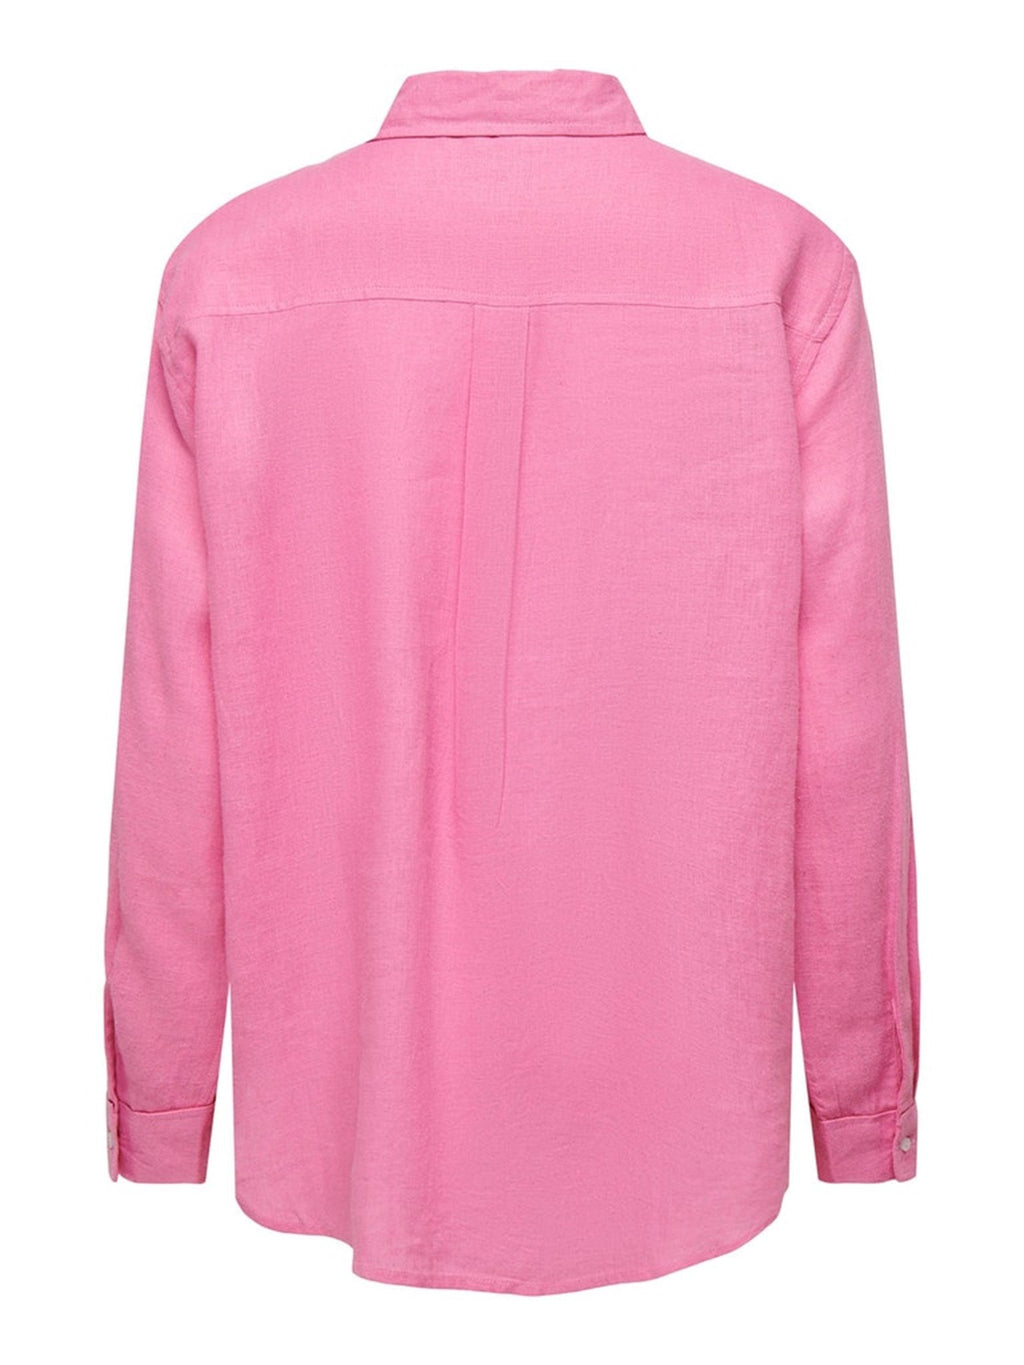 Tokijo lininiai marškinėliai - paketėlis rožinis